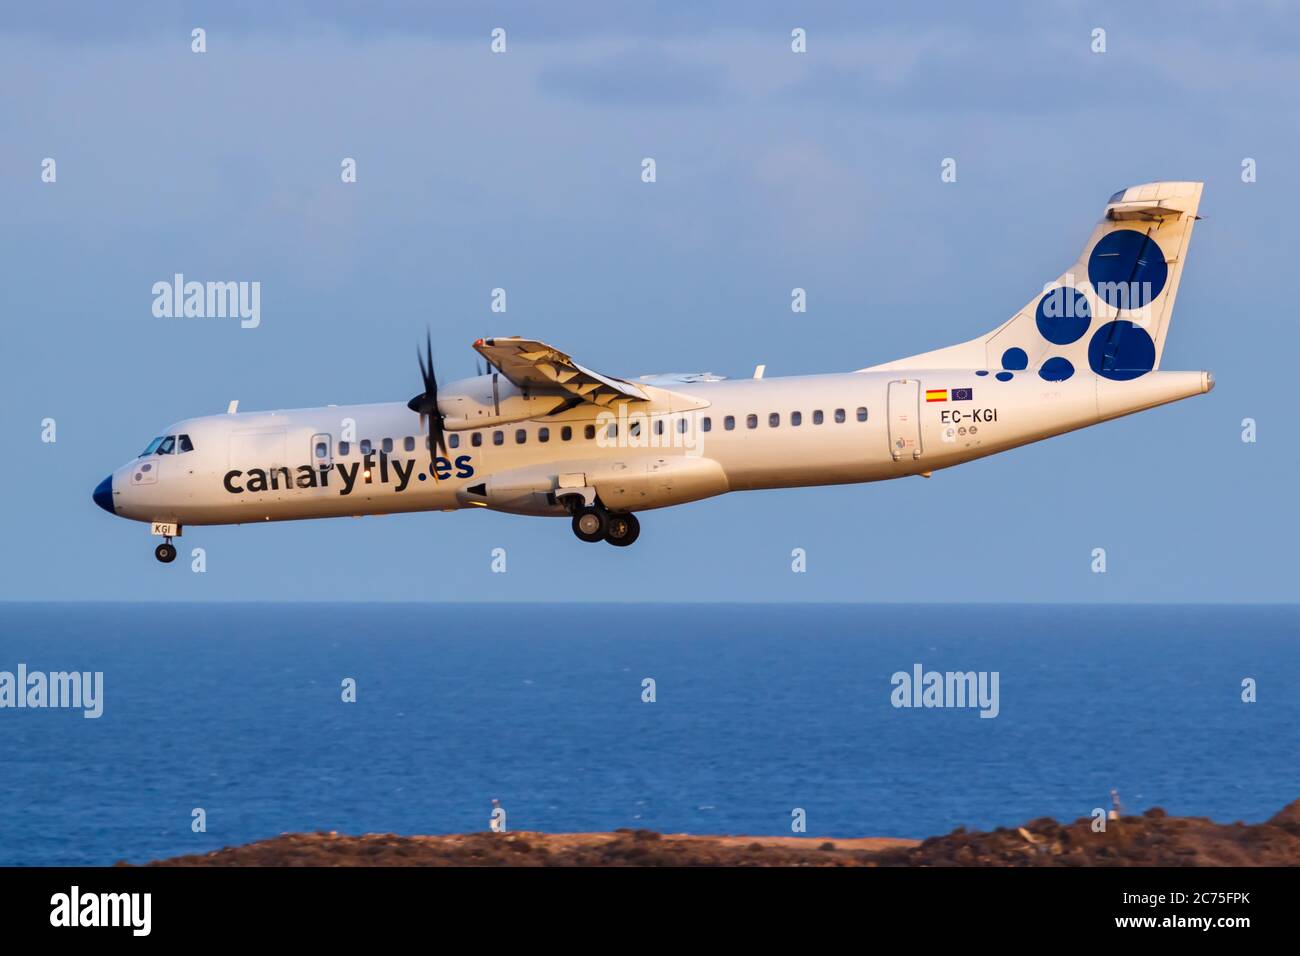 Gran Canaria, Espagne - 24 novembre 2019 : avion de Canaryfly ATR 72-500 à l'aéroport de Gran Canaria (LPA) en Espagne. Banque D'Images